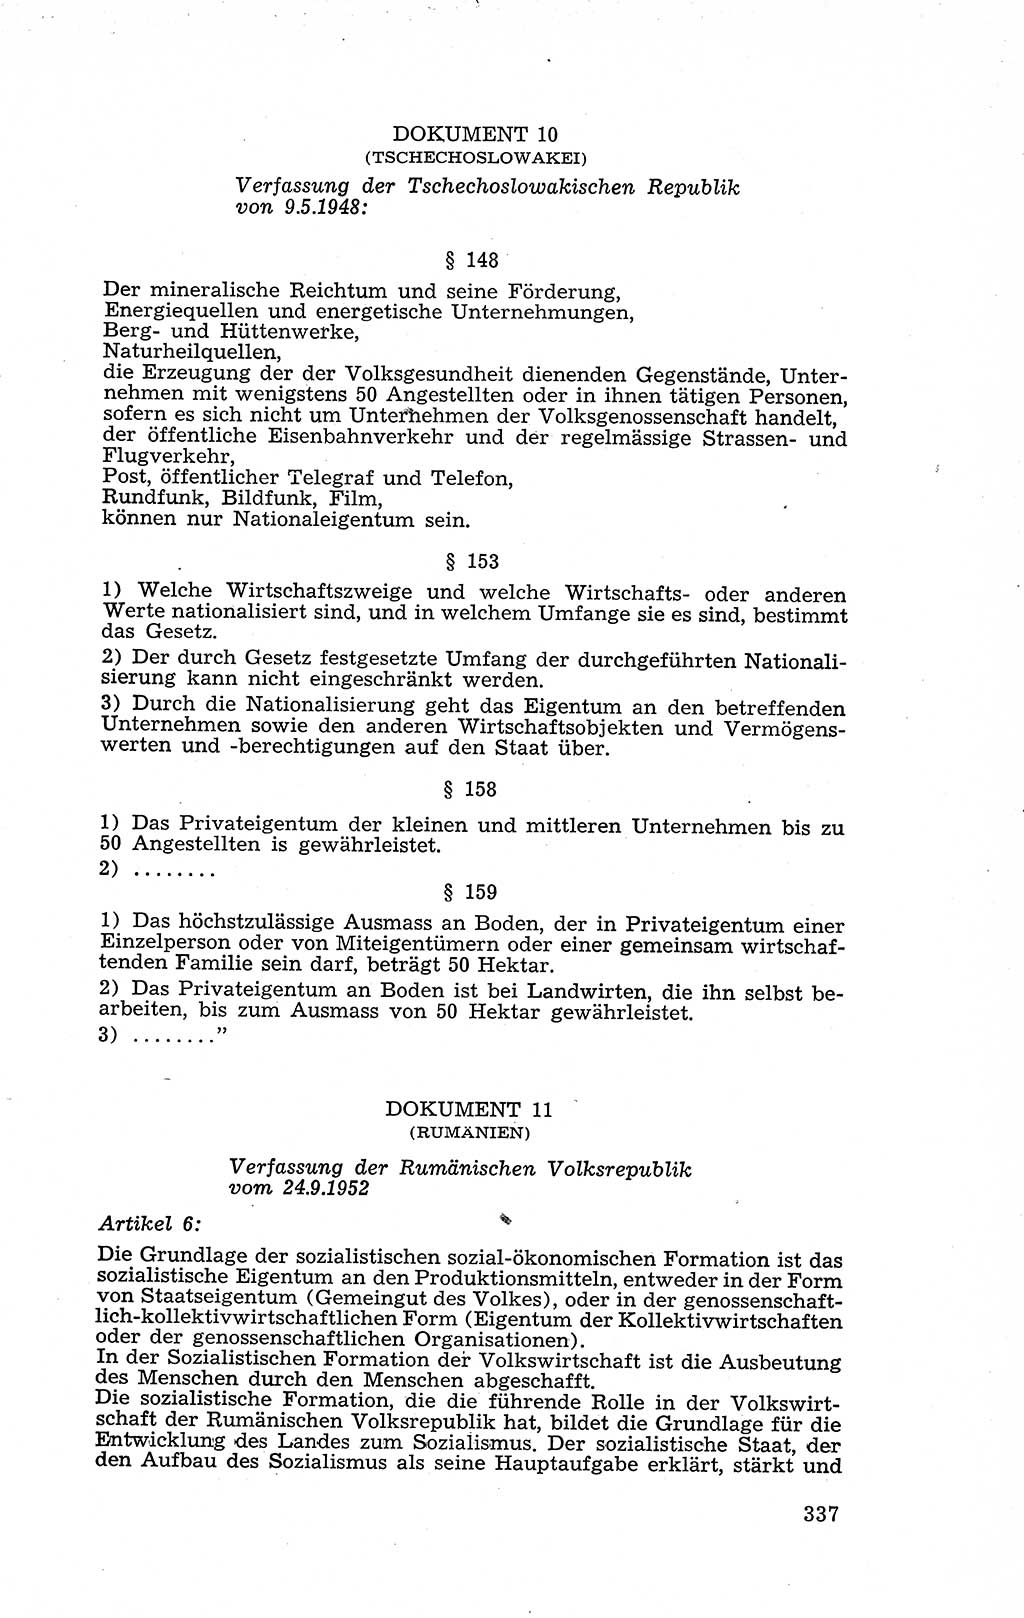 Recht in Fesseln, Dokumente, Internationale Juristen-Kommission [Bundesrepublik Deutschland (BRD)] 1955, Seite 337 (R. Dok. IJK BRD 1955, S. 337)